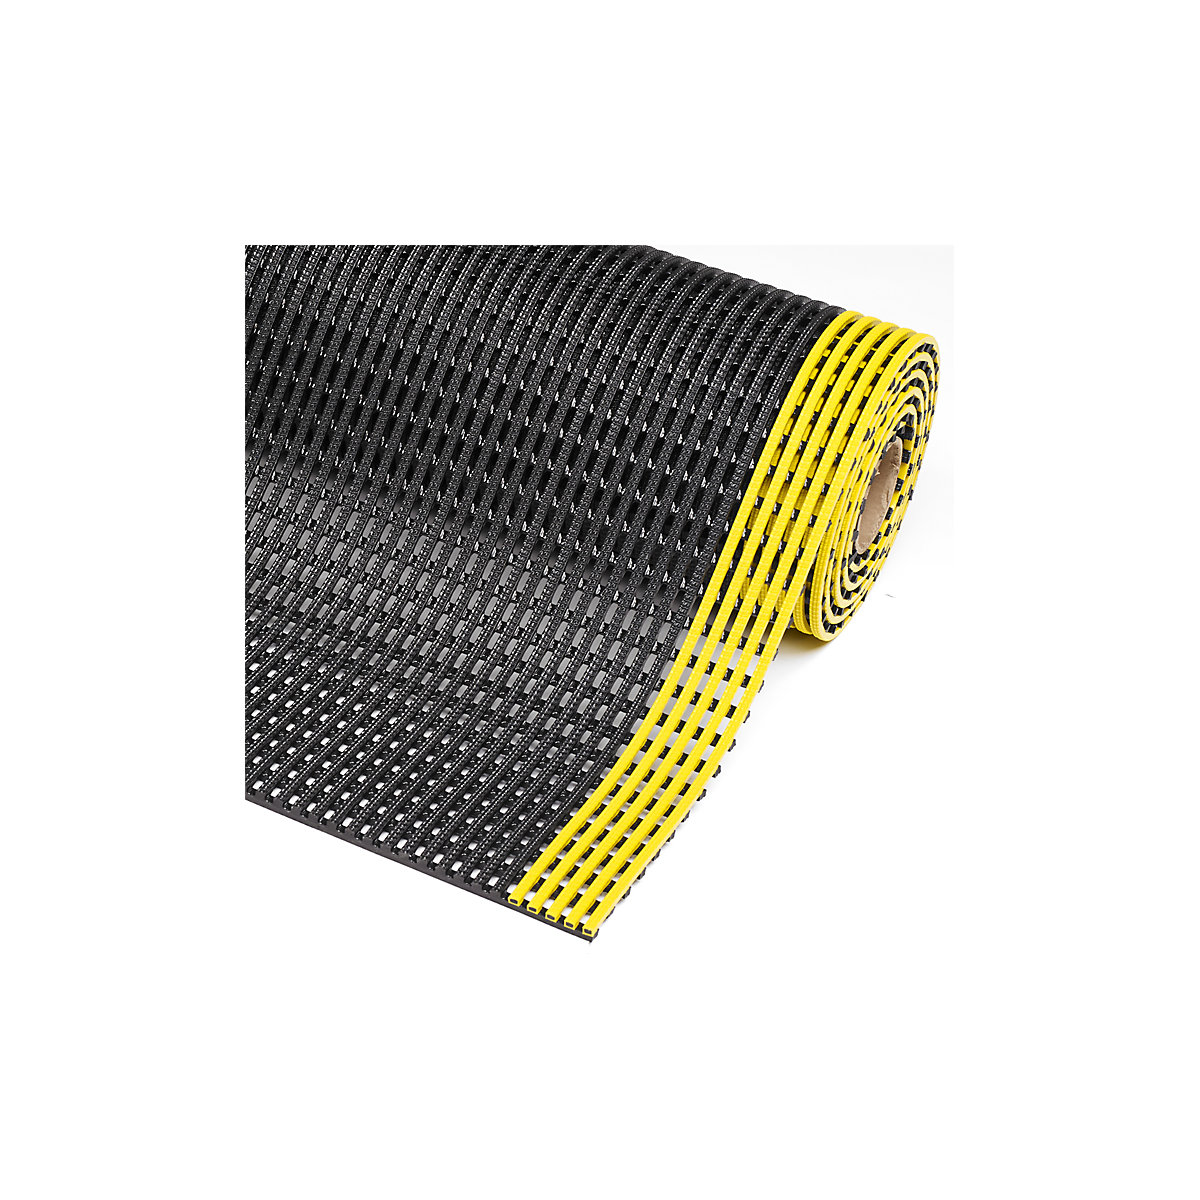 Gaasmat Flexdek™ – NOTRAX, breedte 600 mm, per str. m, zwart/geel-2